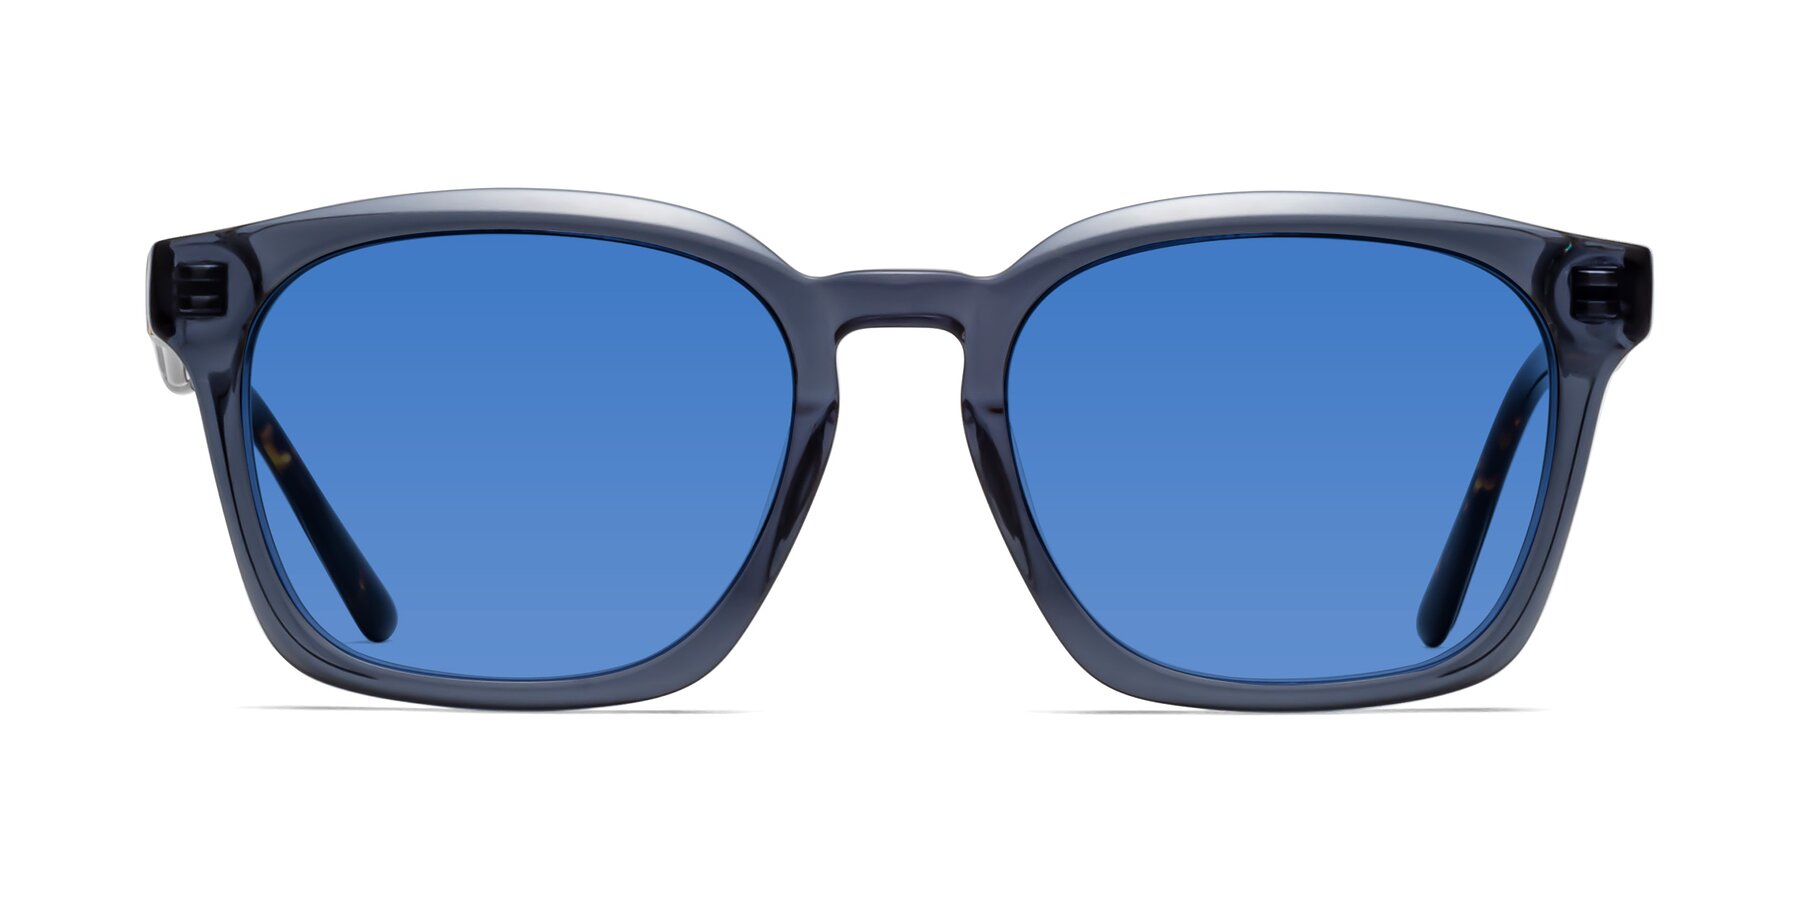 1474 - Faded Blue Sunglasses